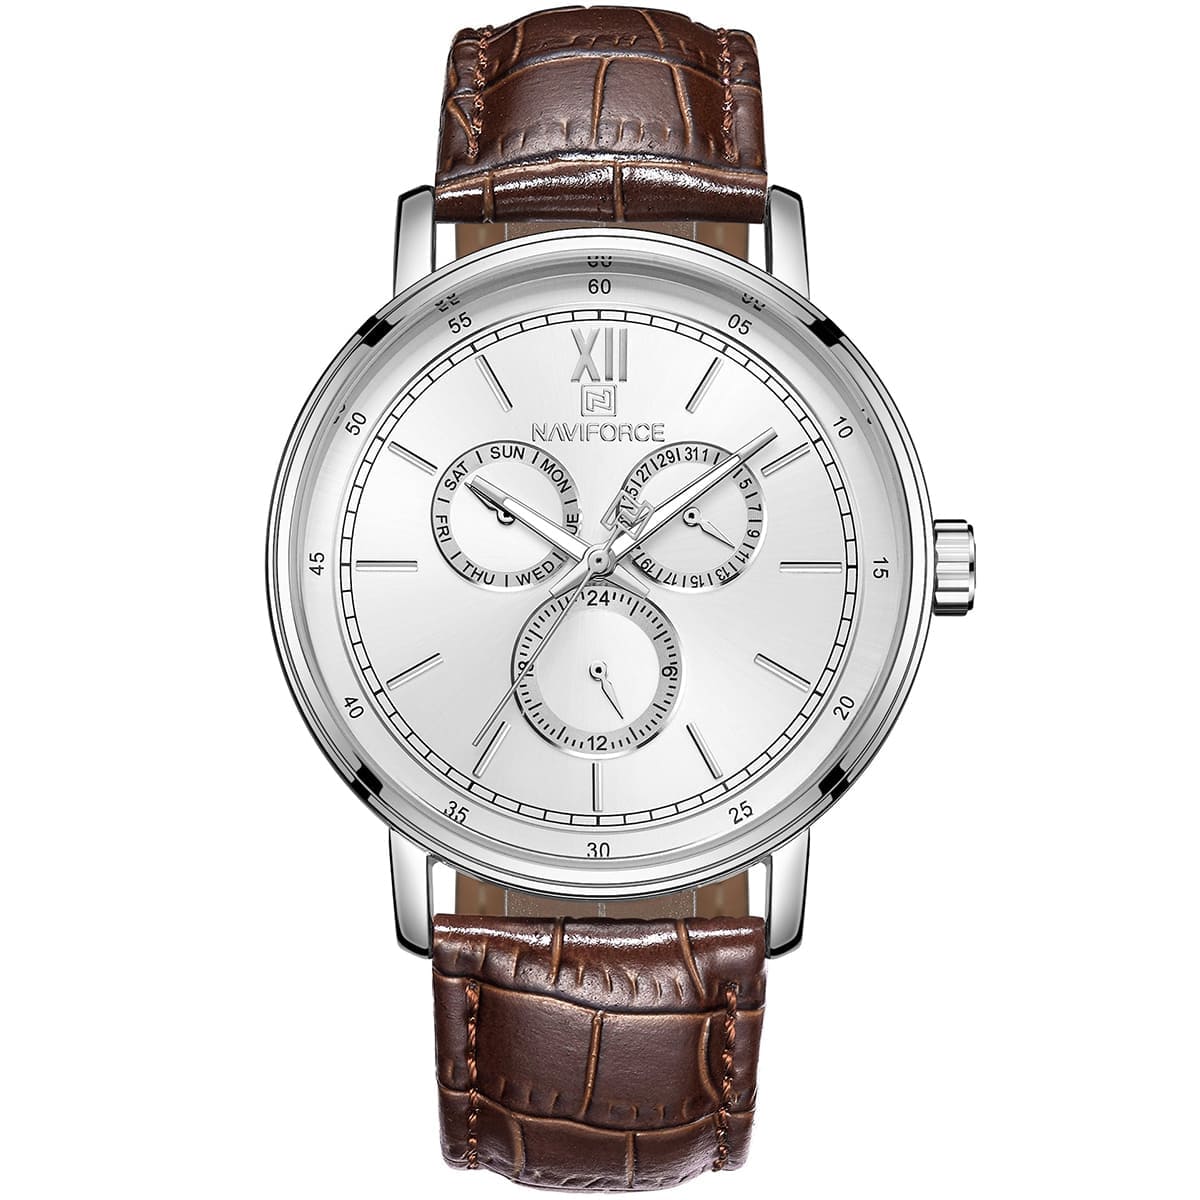 Naviforce Men's Watch NF3002 S W | Watches Prime